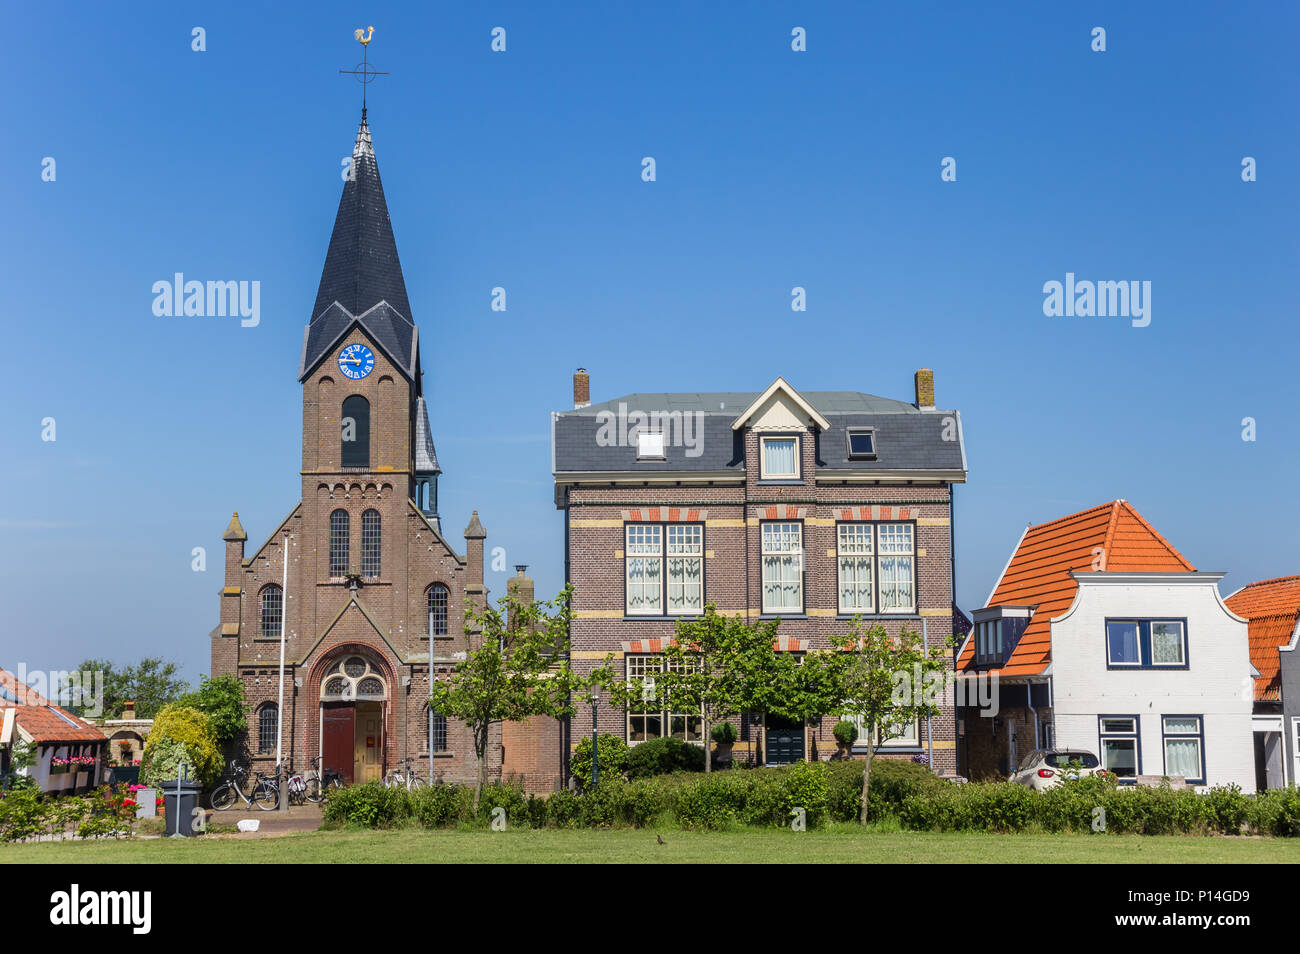 Martinus église et maisons anciennes de l'île de Texel Oudeschild, Pays-Bas Banque D'Images